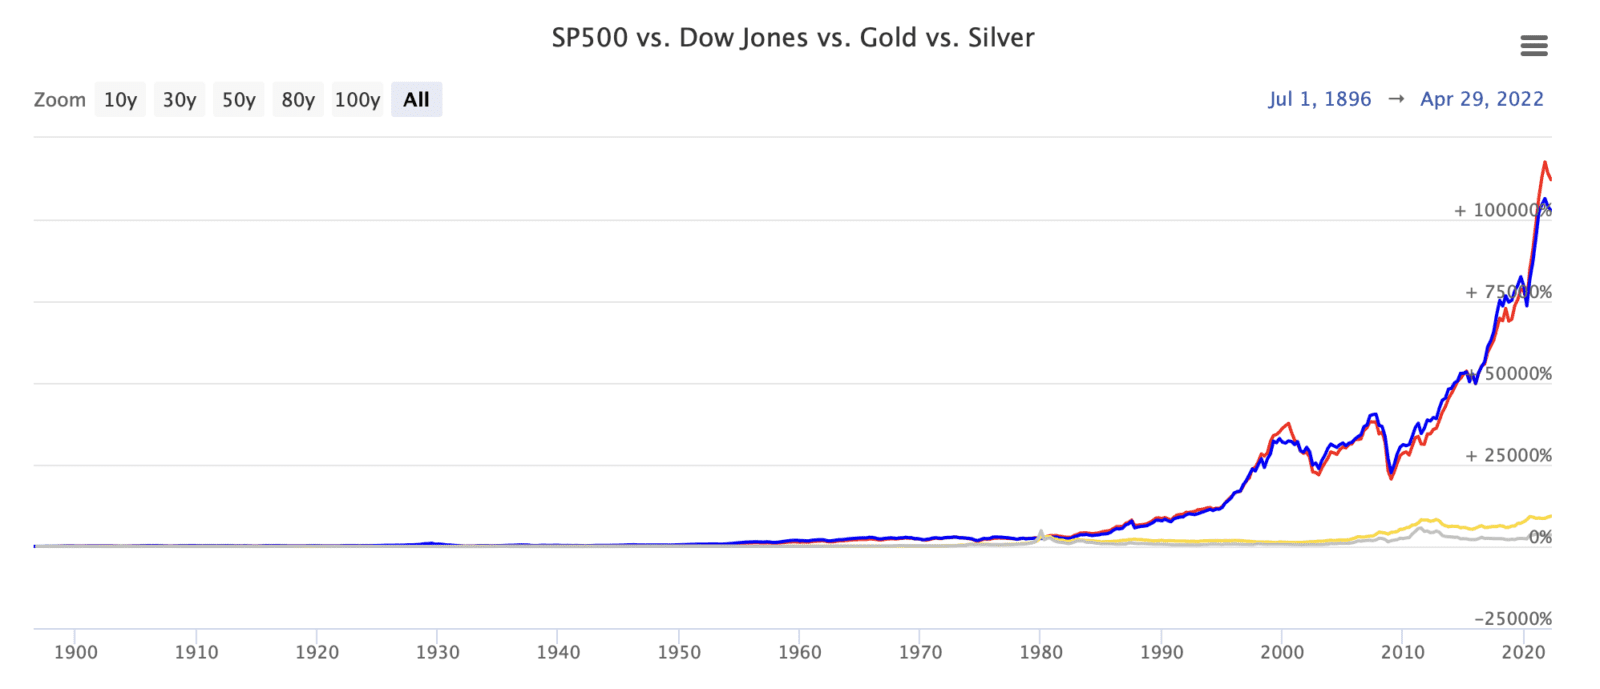 Besmettelijke ziekte composiet legaal Aandelen versus goud en zilver (sinds 1900) - Goudzaken